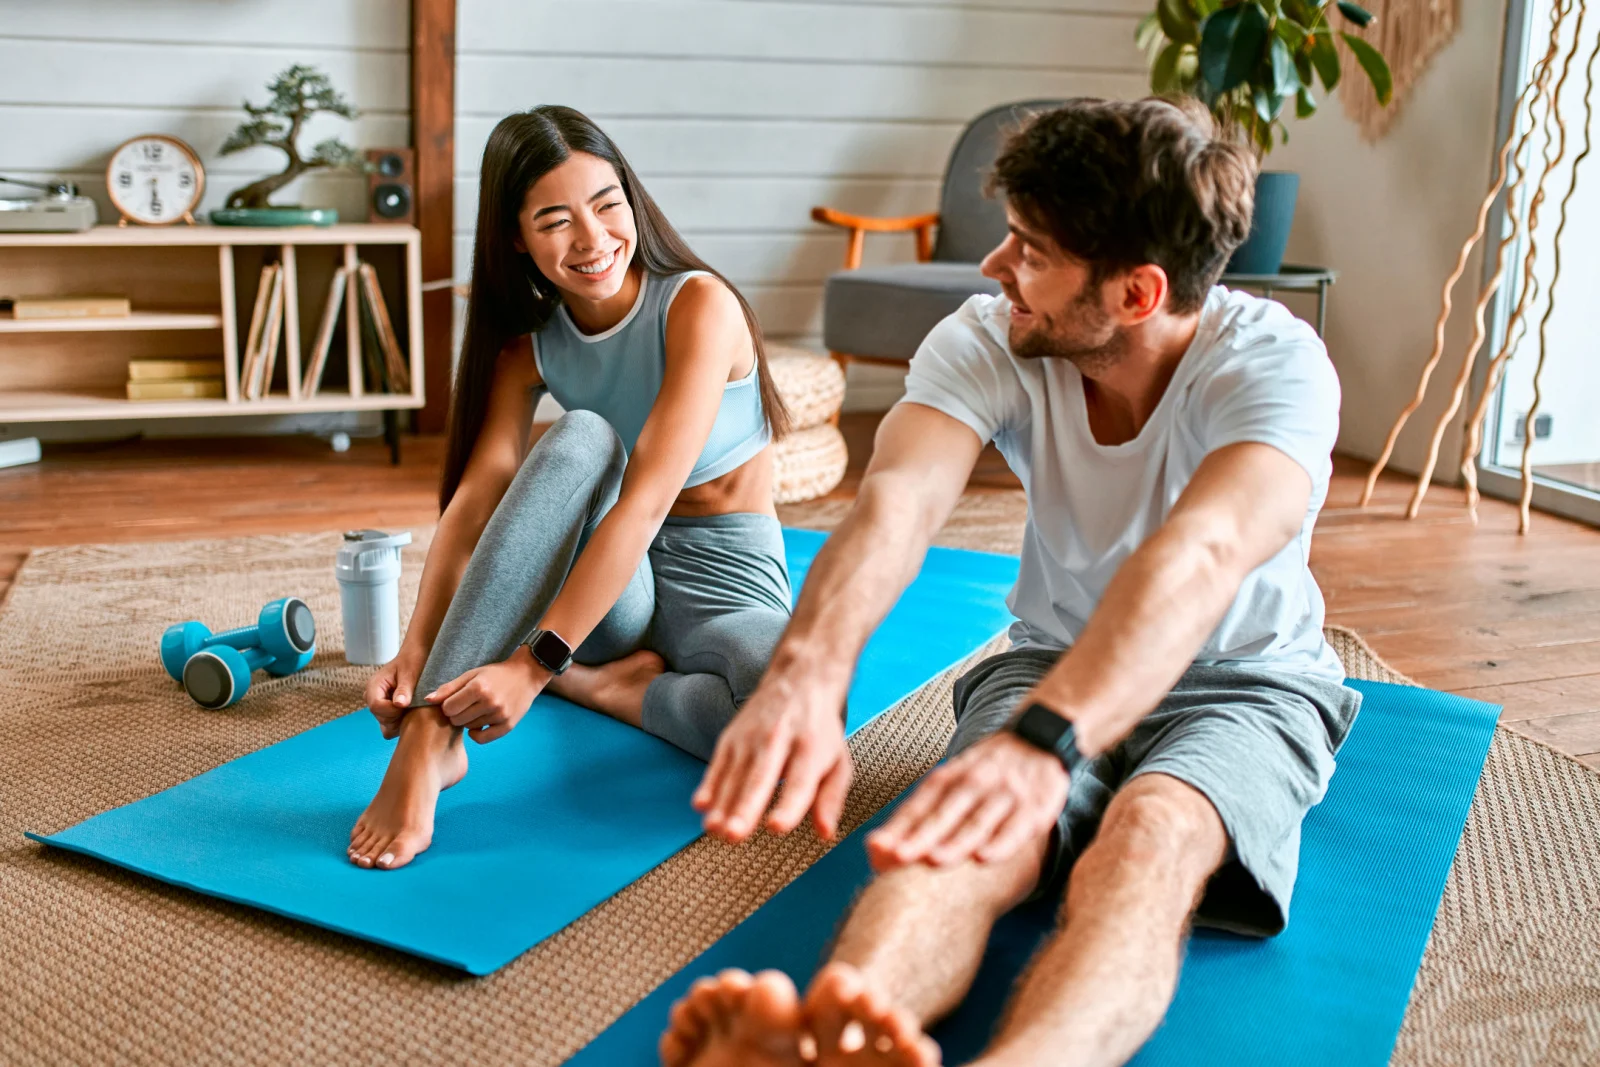 Ein junges Paar in Sportkleidung macht zu Hause in einem hellen, gemütlichen Wohnzimmer Übungen auf Matten.